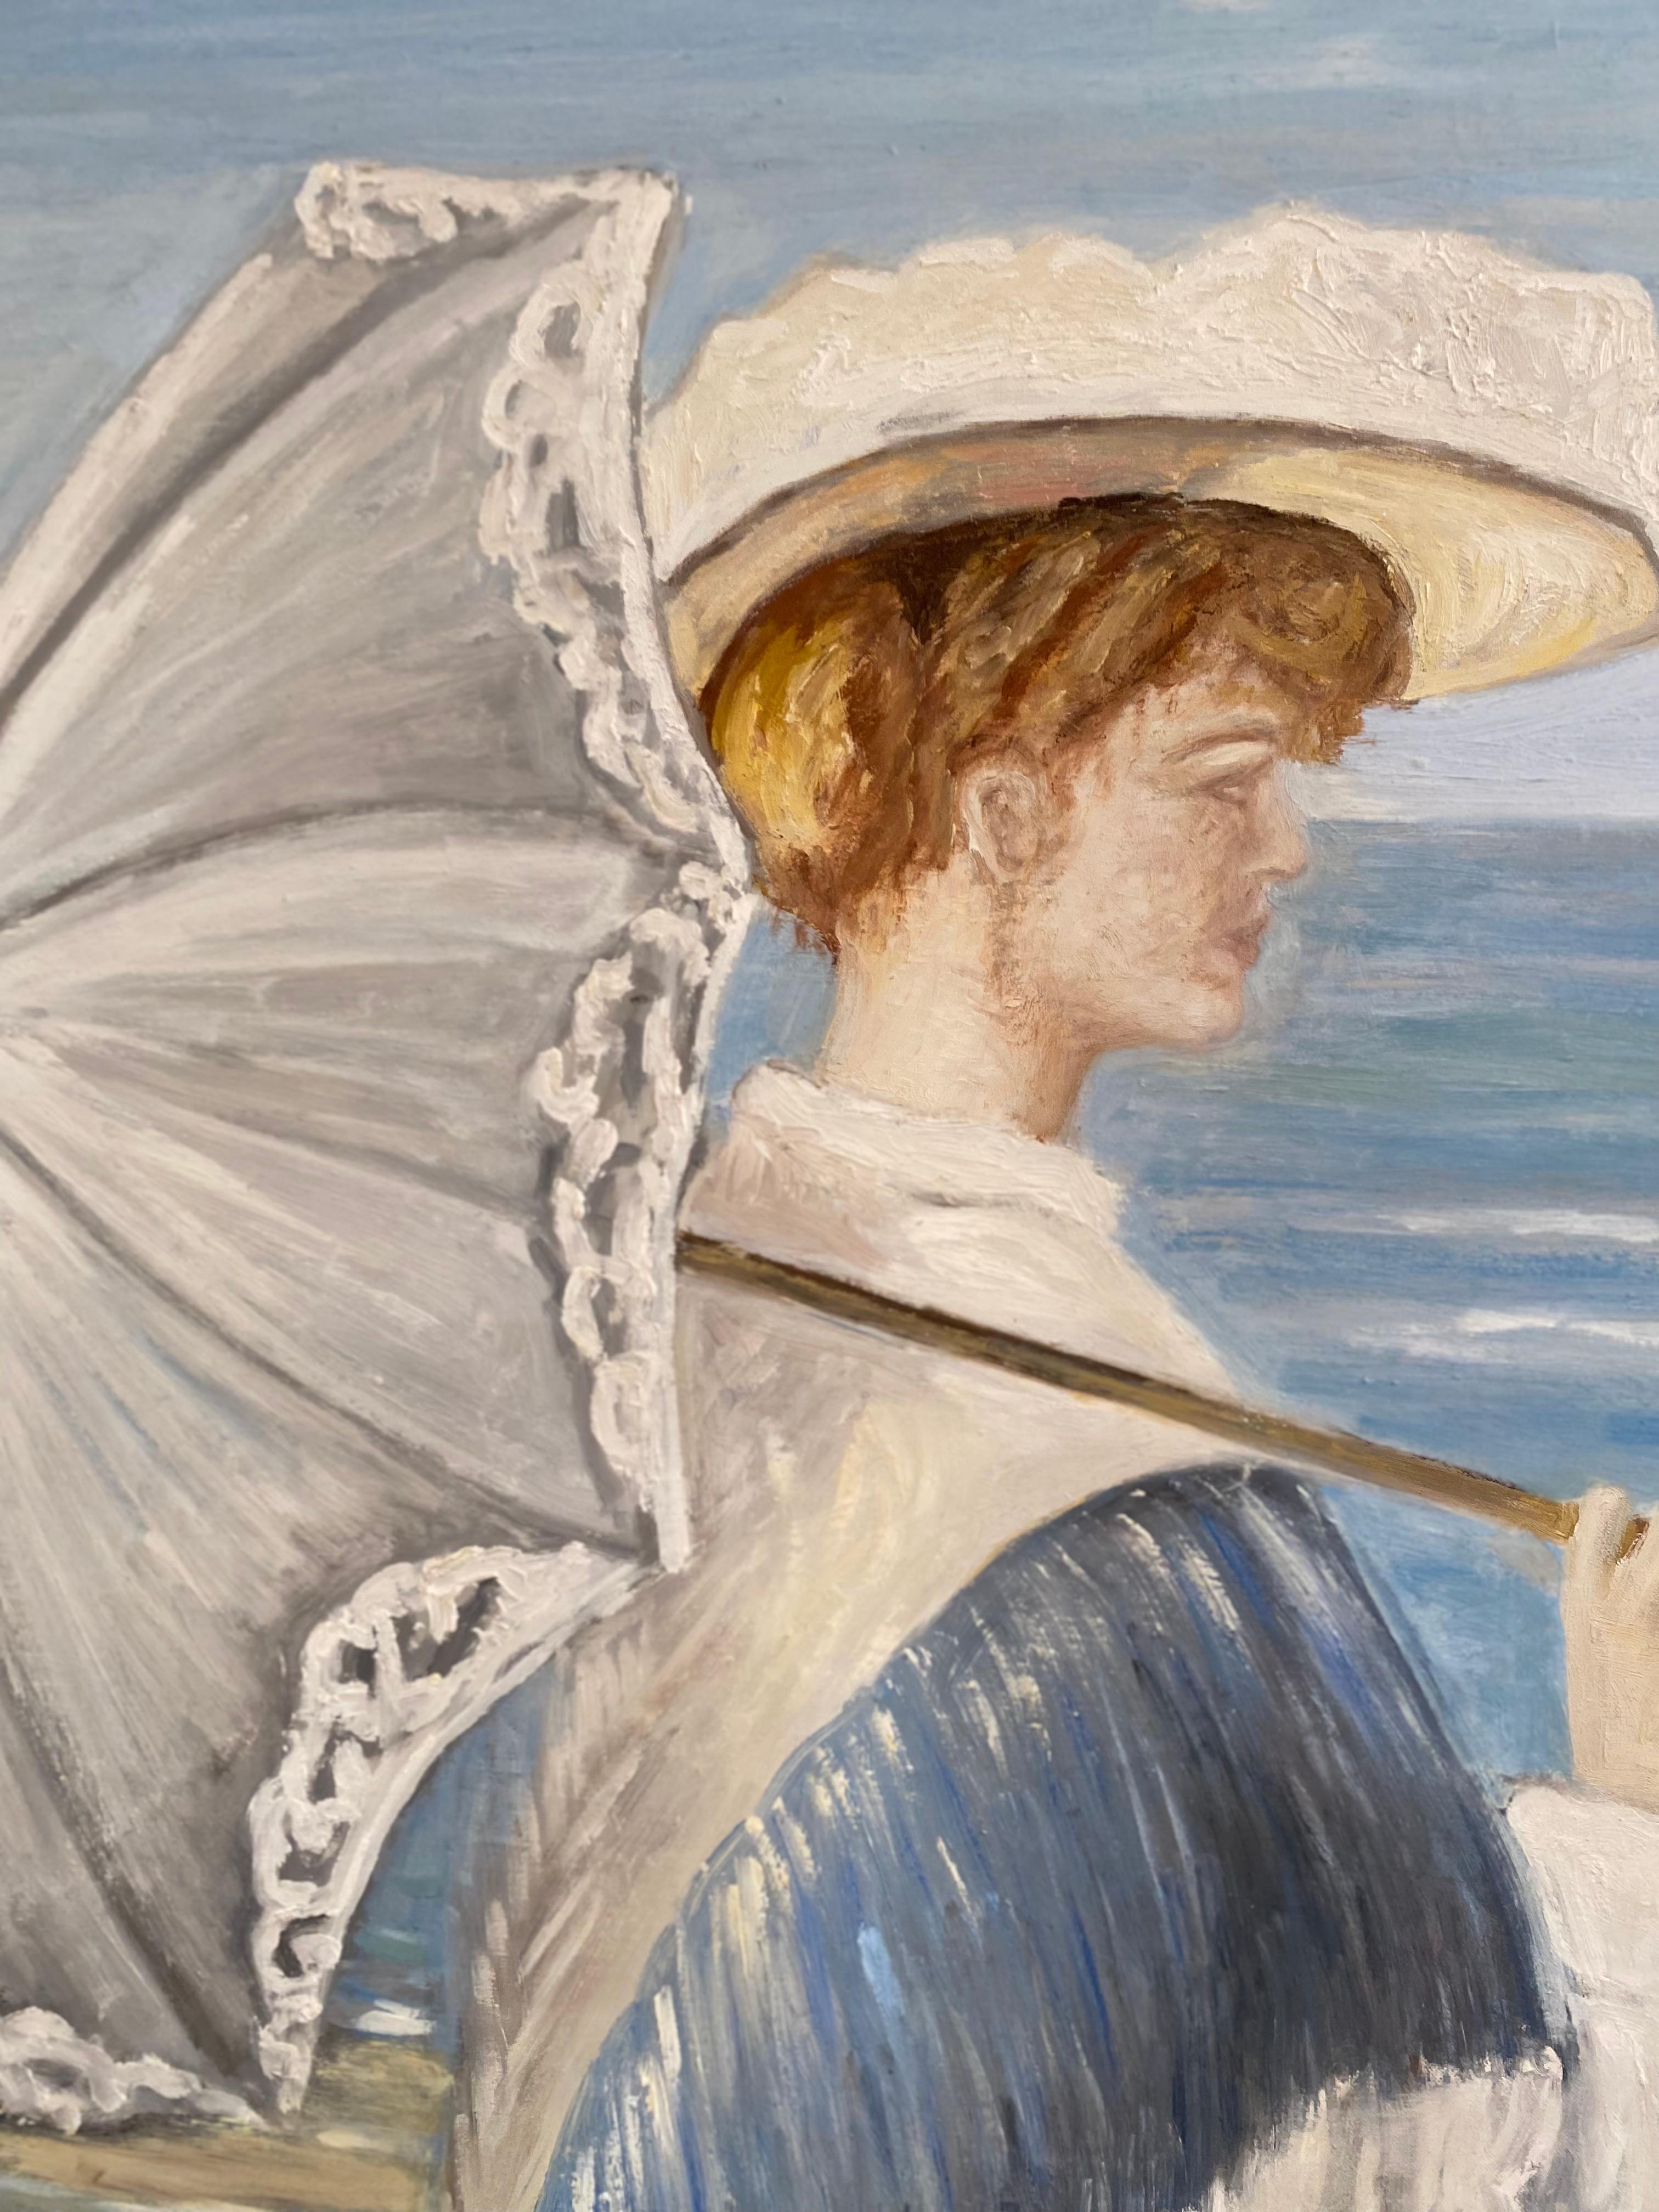 Huile sur toile dans le style de Krøyer
Circa 1950
dimensions : h157cmx W96 cm x d3cm
Réf : 1007
Prix : 1600 € pour ce tableau